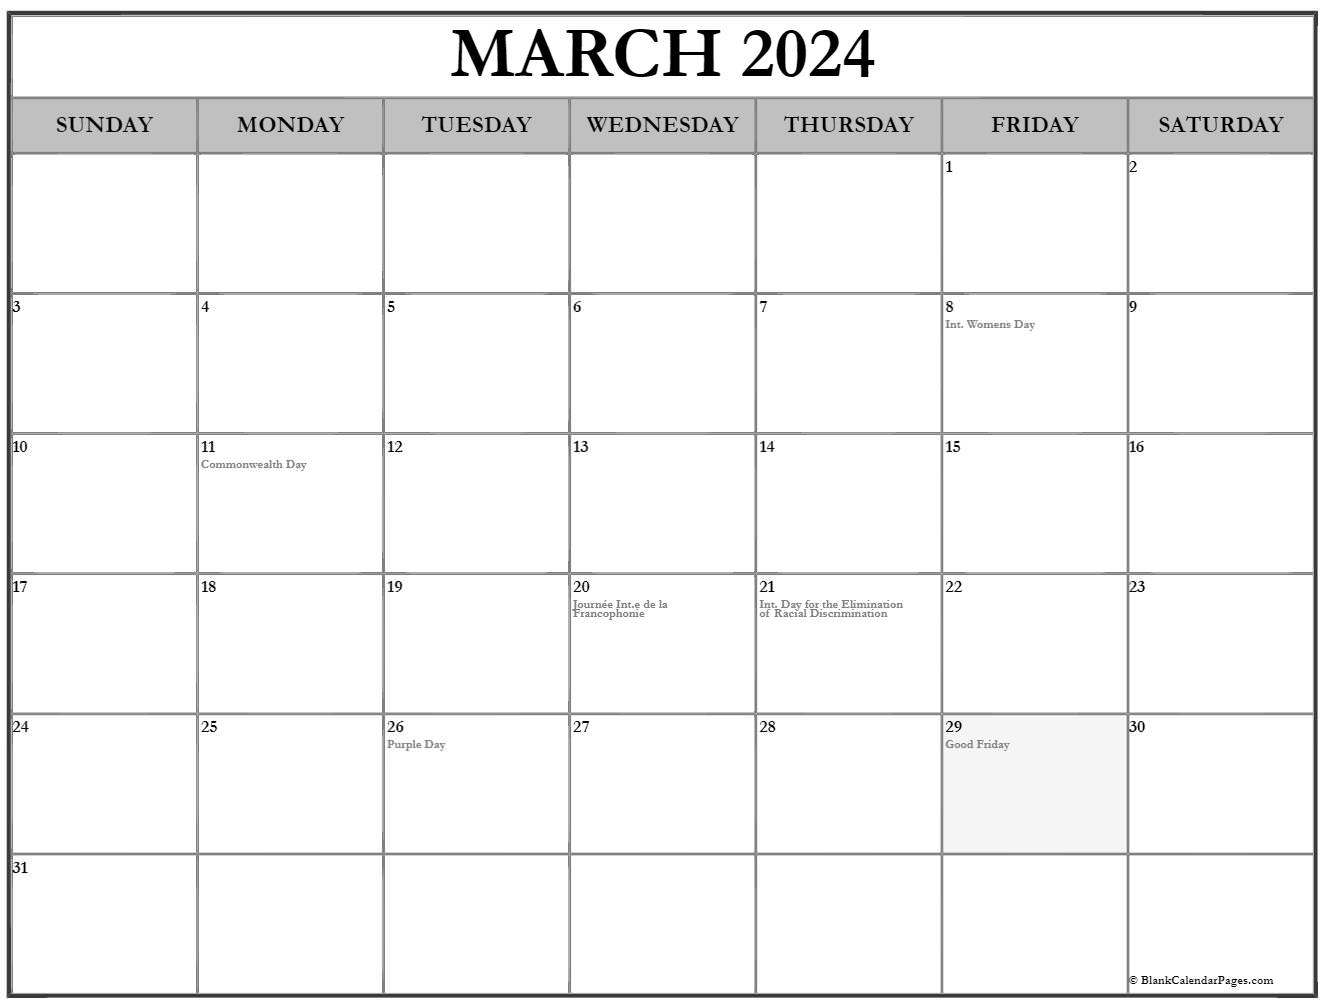 29 March 2024 Public Holiday Jana Rivkah